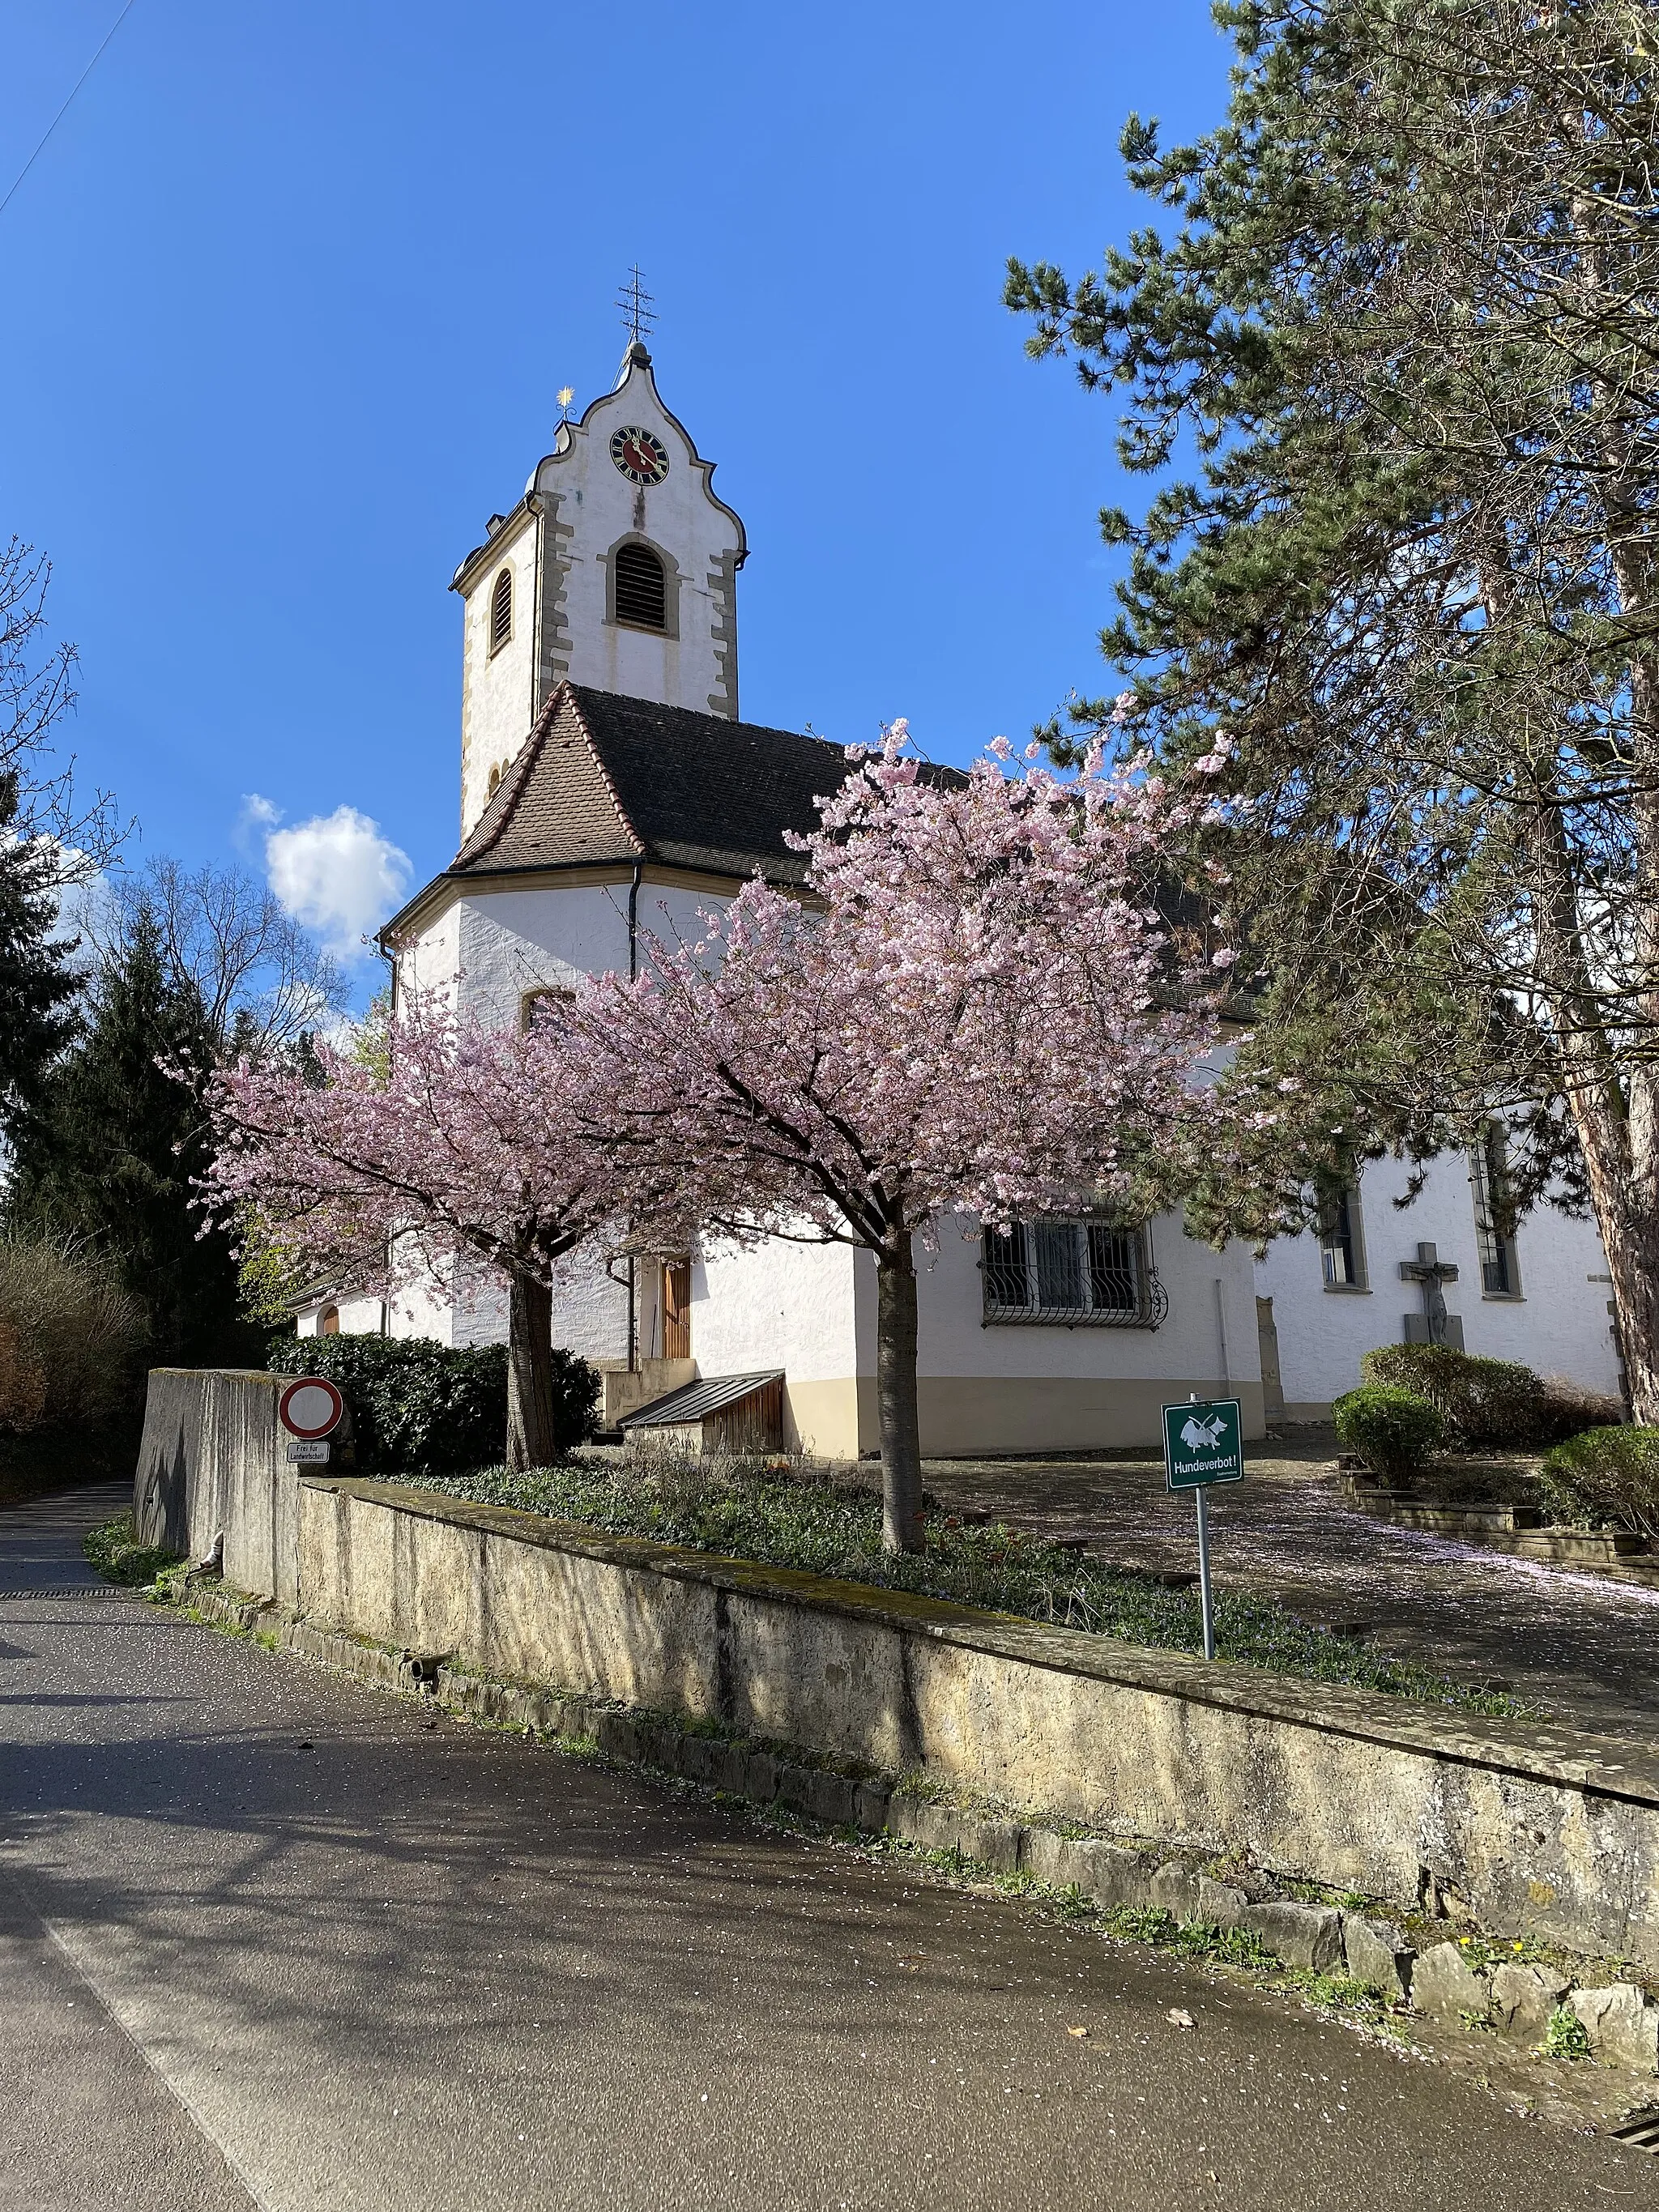 Photo showing: Die römisch-katholische Kirche St. Vitus in Wettelbrunn biete im Frühjahr ein malerisches Bild mit den die Kirche umgebenden blühenden Bäumen .